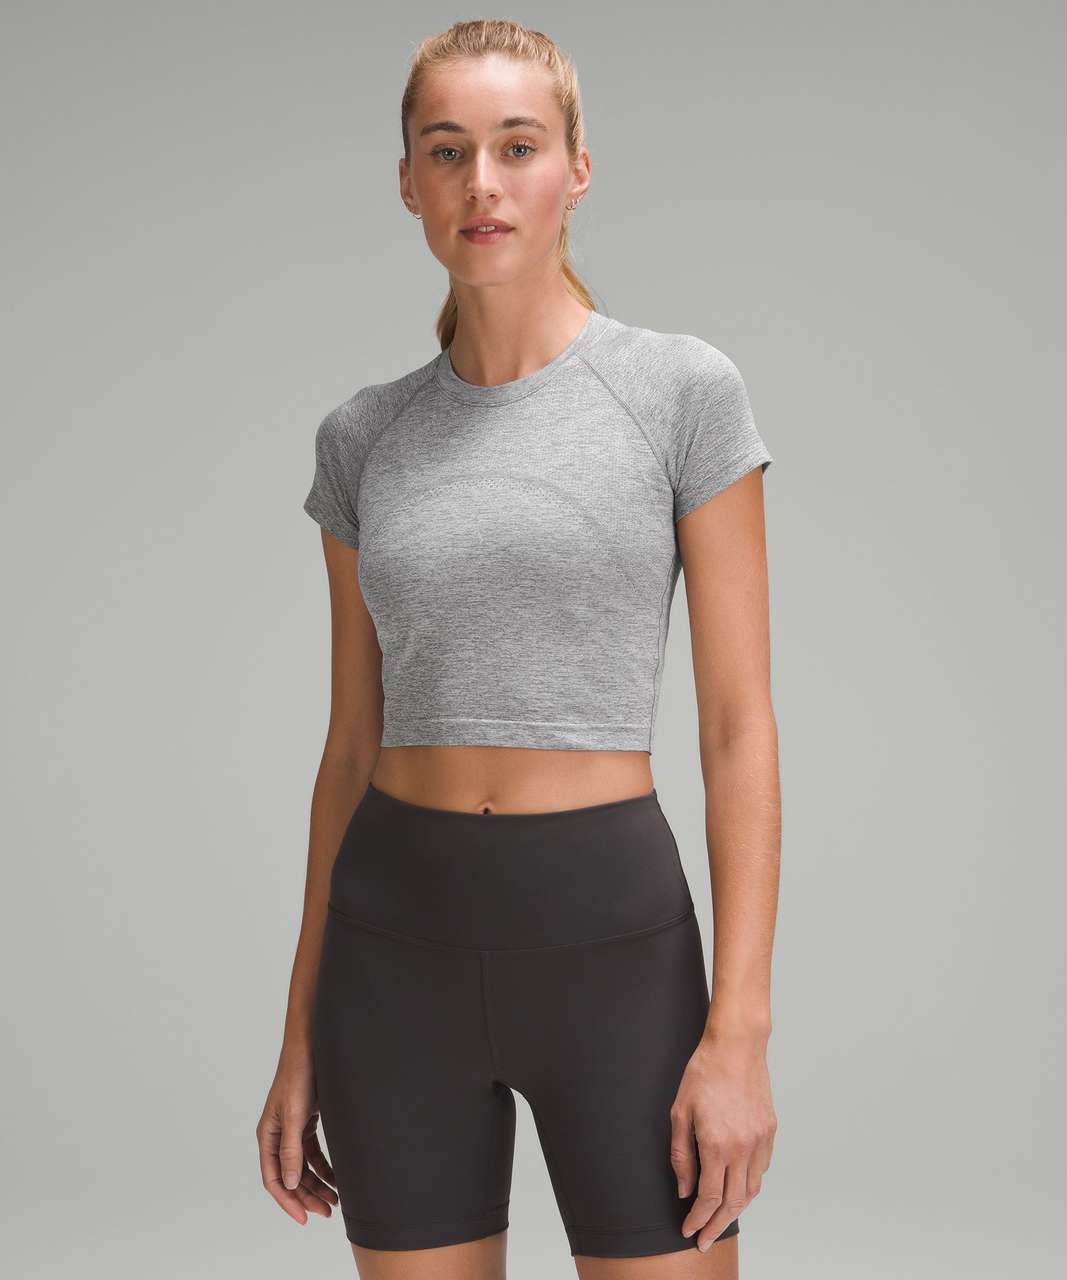 Lululemon Swiftly Tech Cropped Short-Sleeve Shirt 2.0 - Slate / White